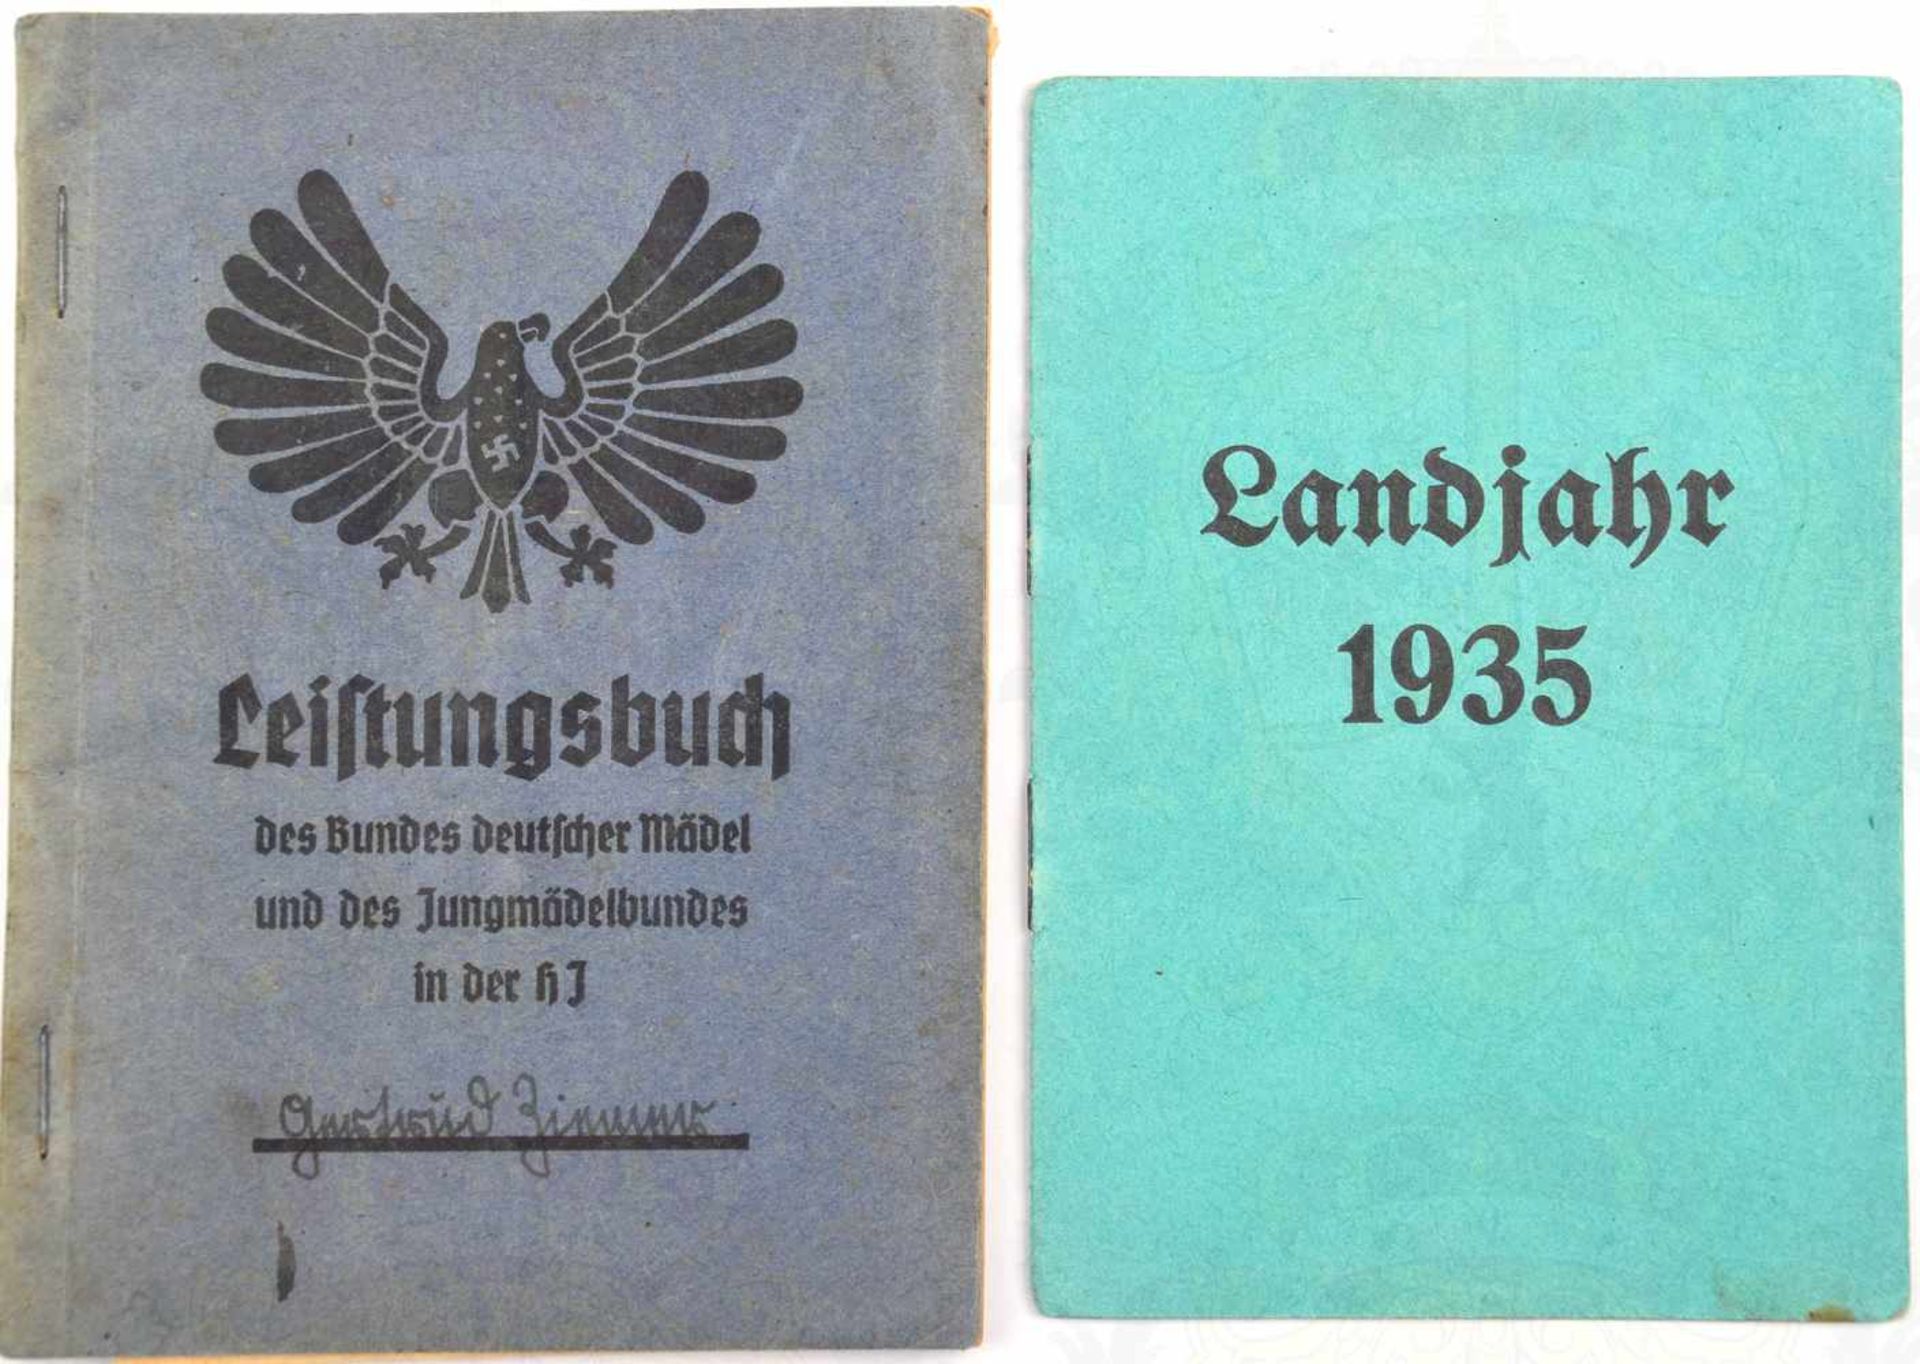 2 AUSWEISE, Landjahrlager Sassin bei Lauenburg in Pommern 1935, Hitlerjunge aus Duisburg-Hamborn, m.